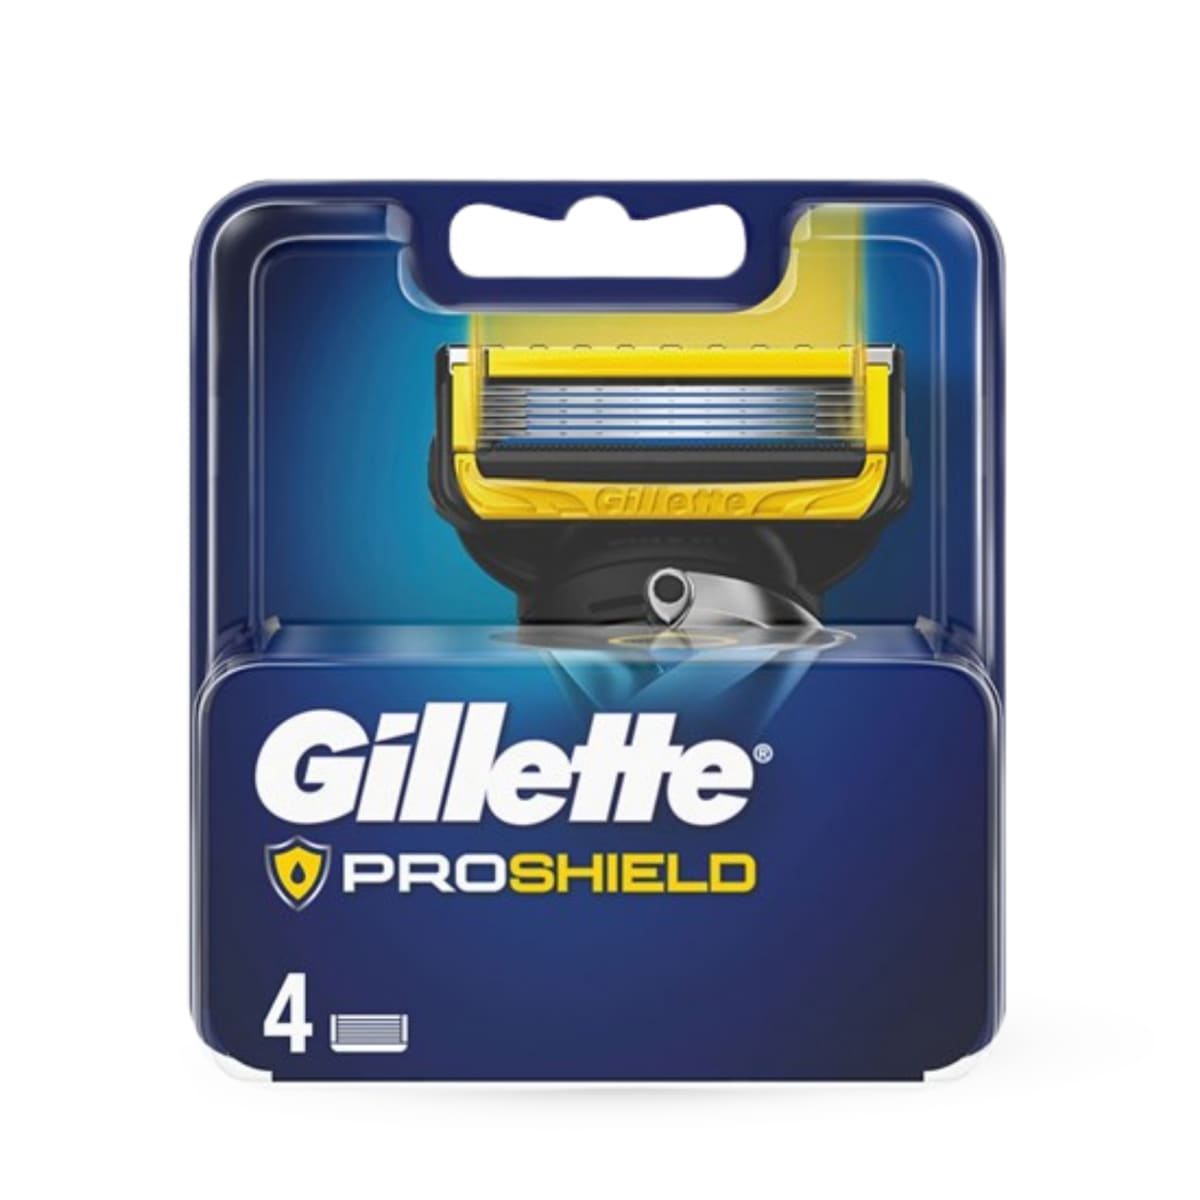 Gillette Proshield 4 pack